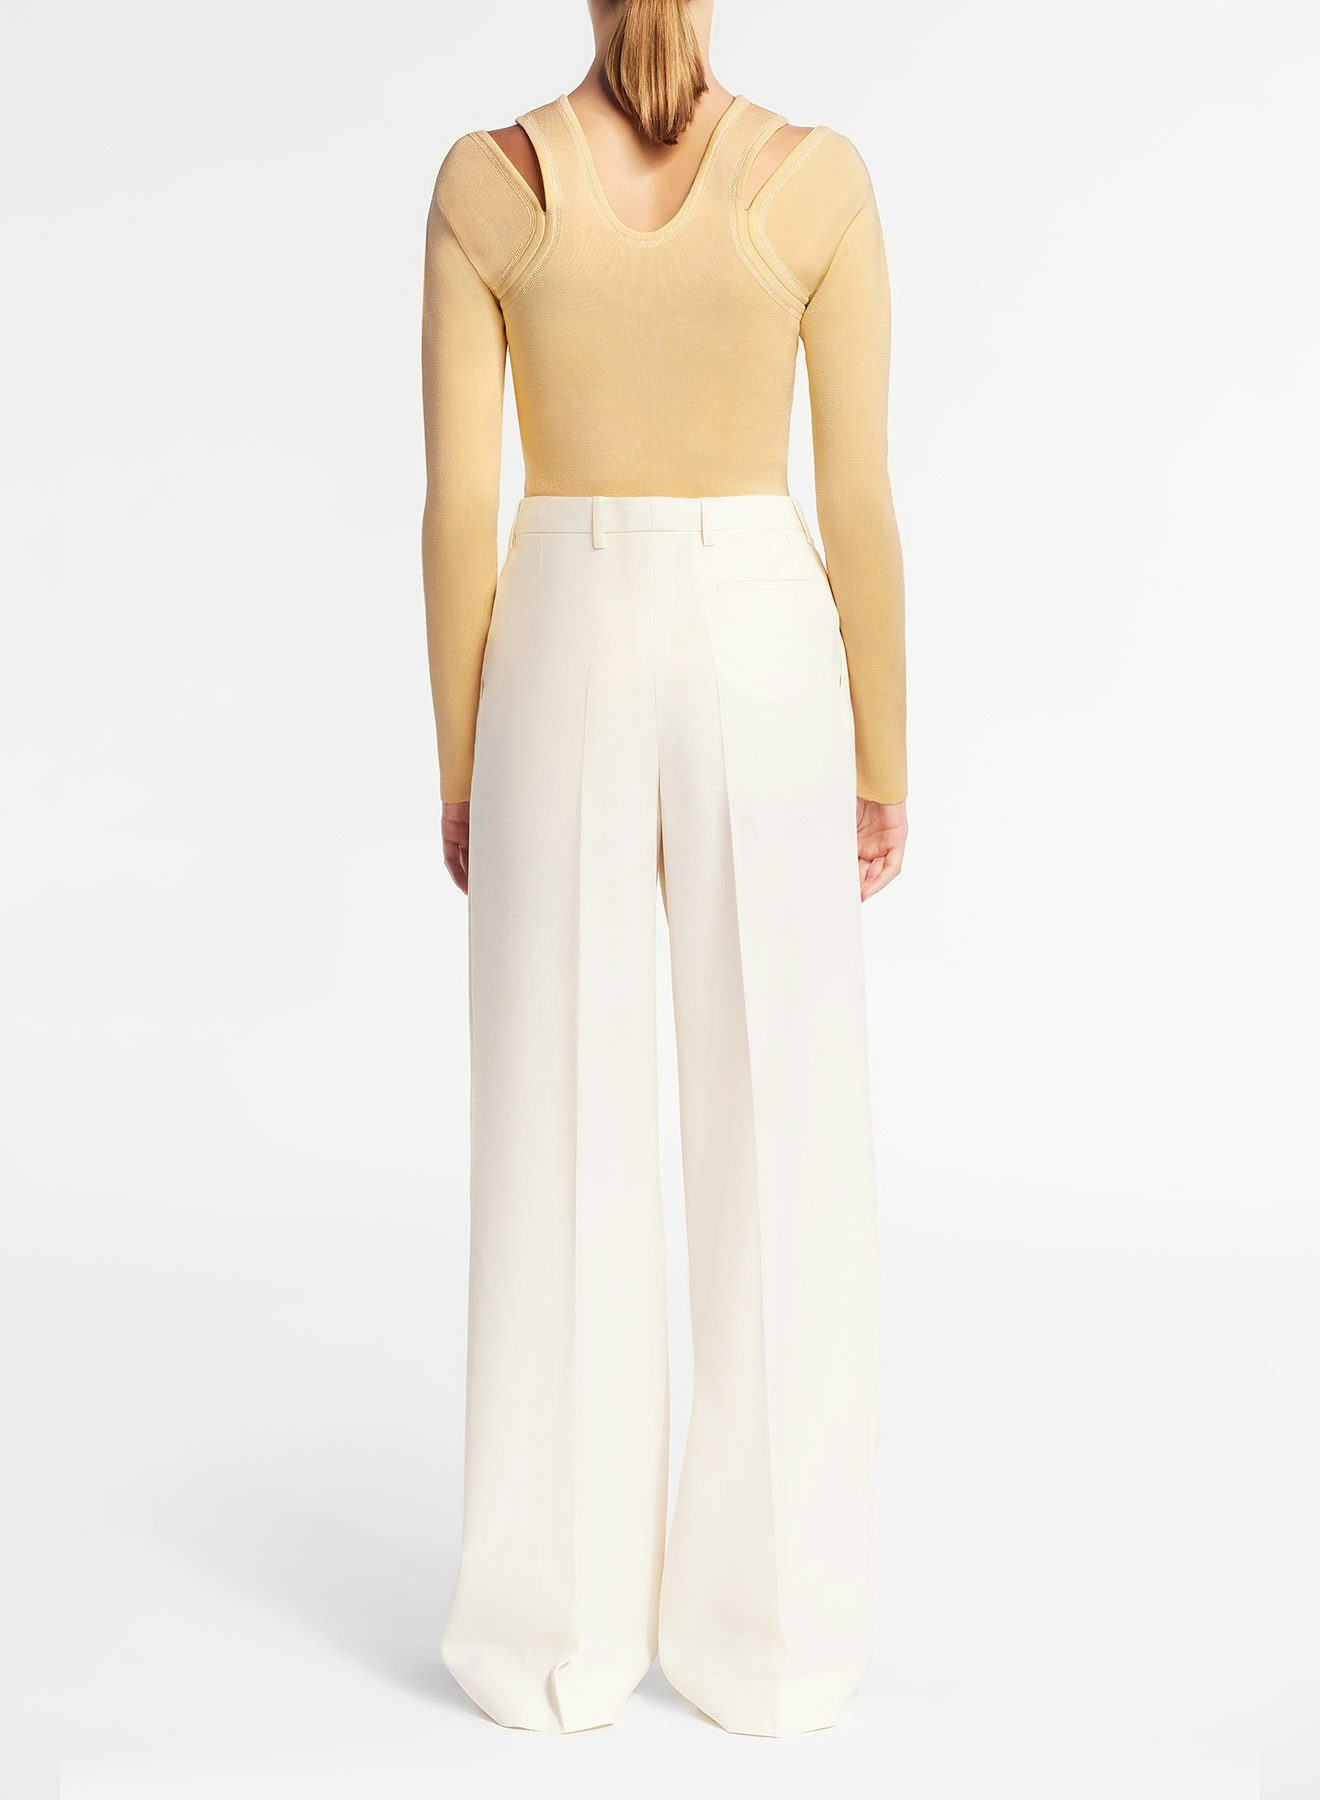 Pantalón amplio con pinzas de gabardina de lana fina en color marfil - Nina Ricci